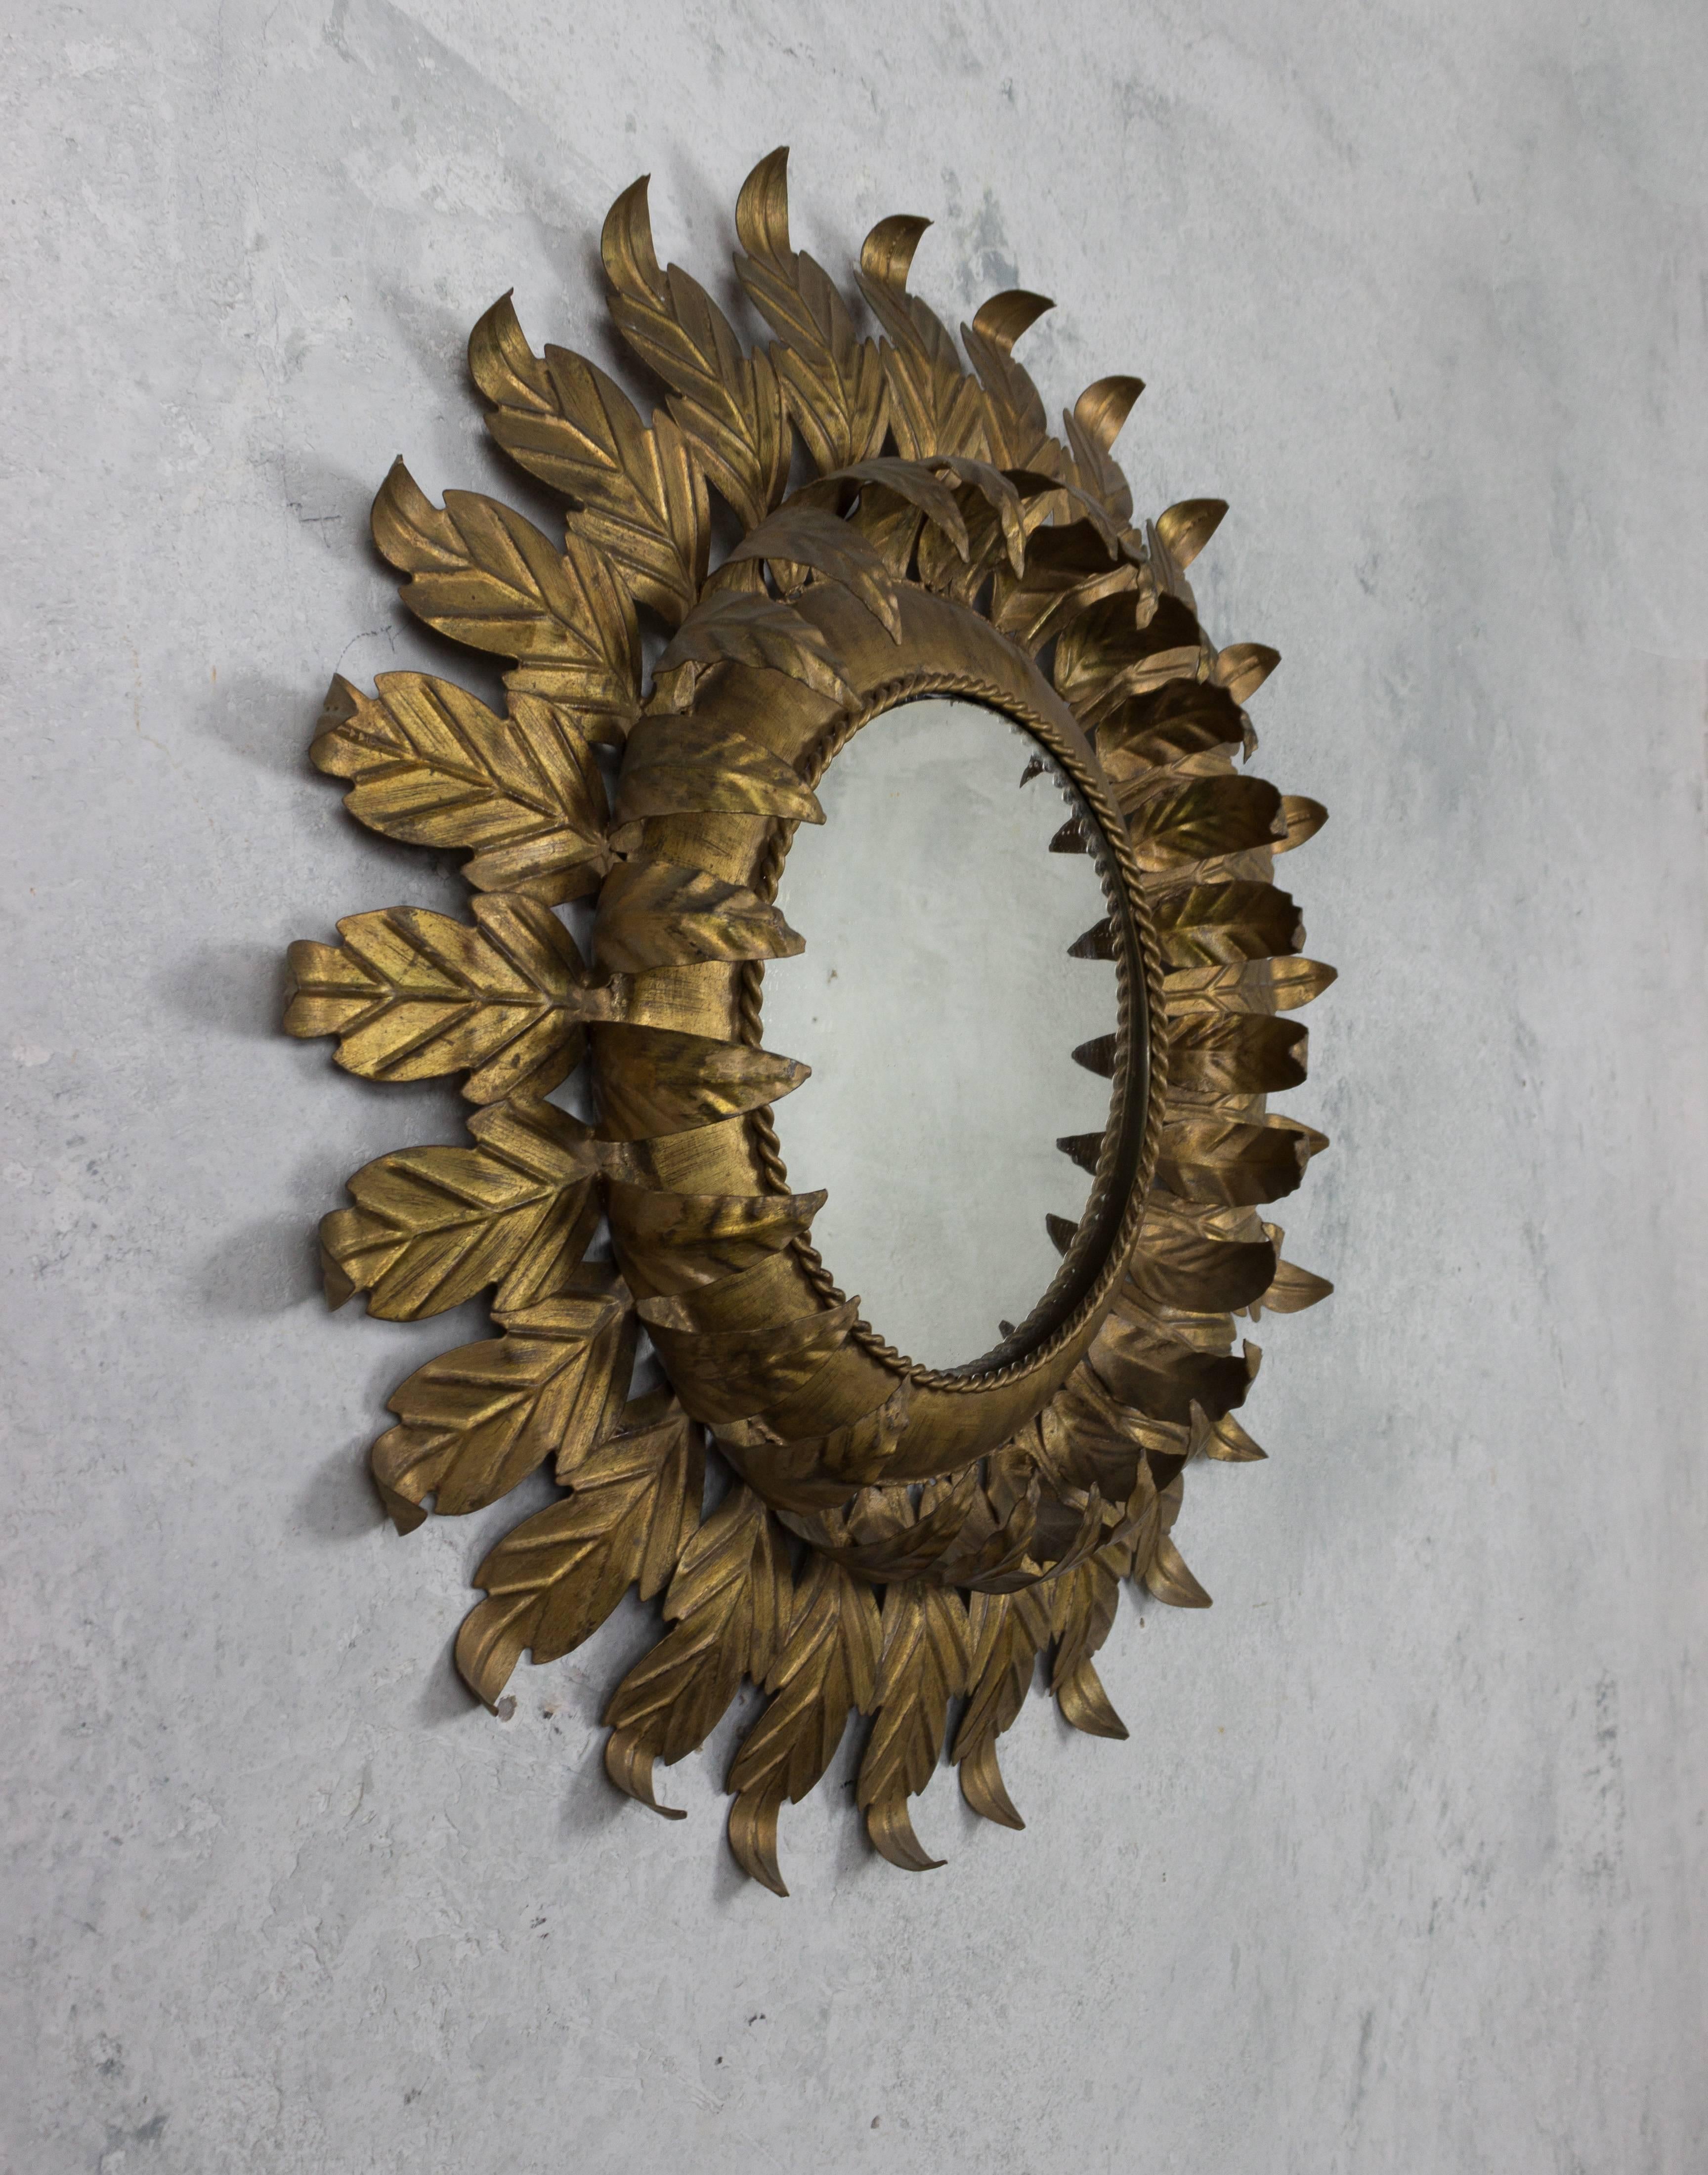 Spanish Round Gilt Iron Sunburst Mirror with Leaf Frame